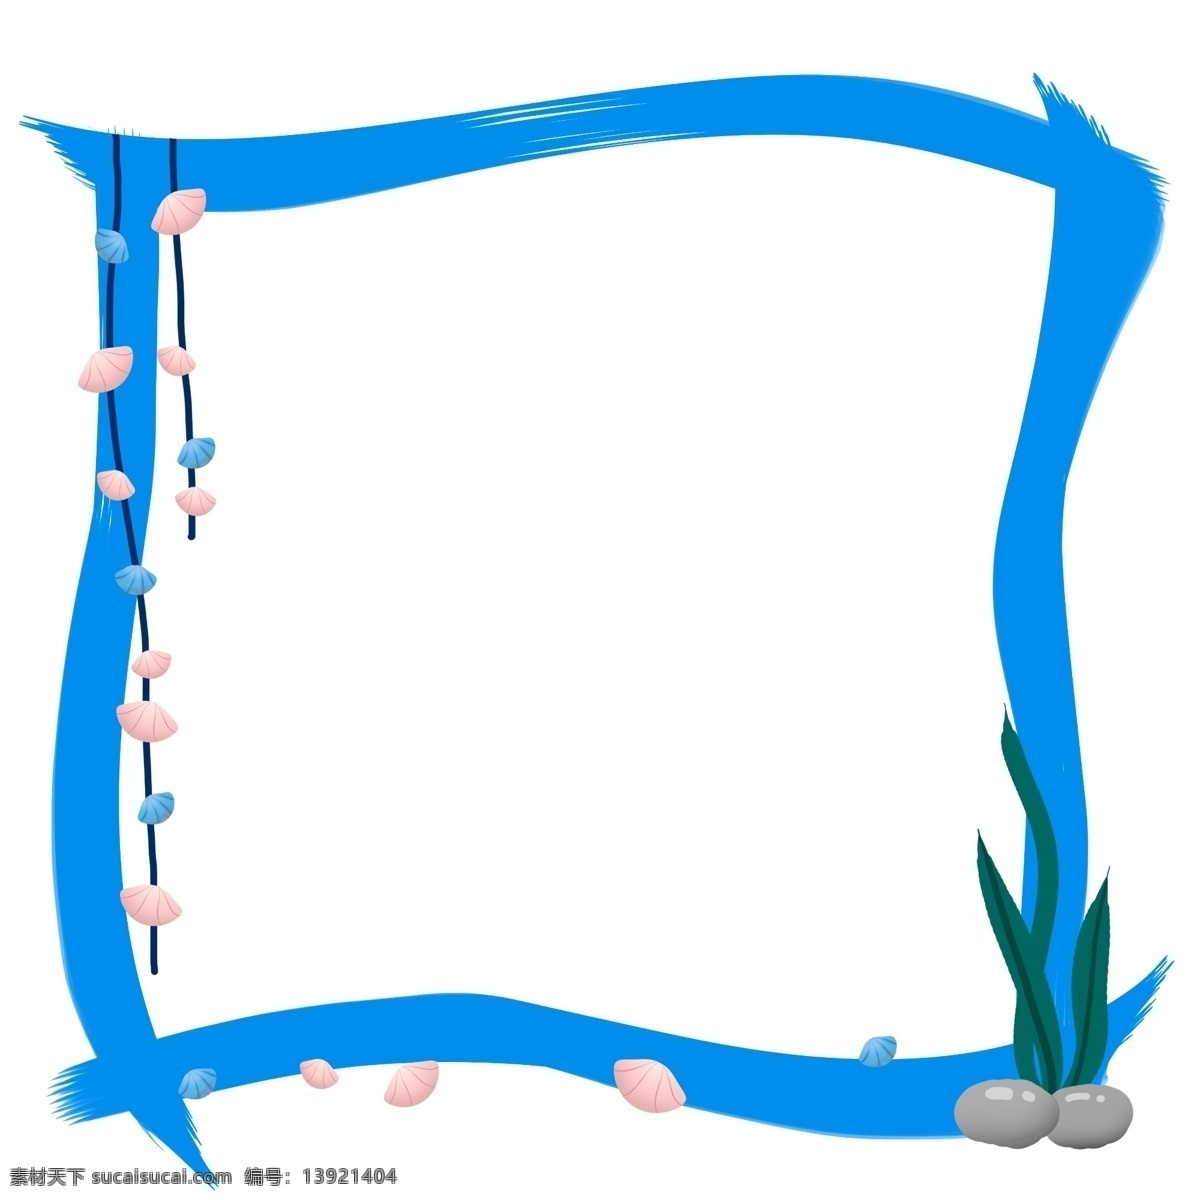 手绘 贝壳 海草 边框 蓝色的边框 漂亮的边框 贝壳海草边框 卡通插画 手绘边框插画 边框的花朵